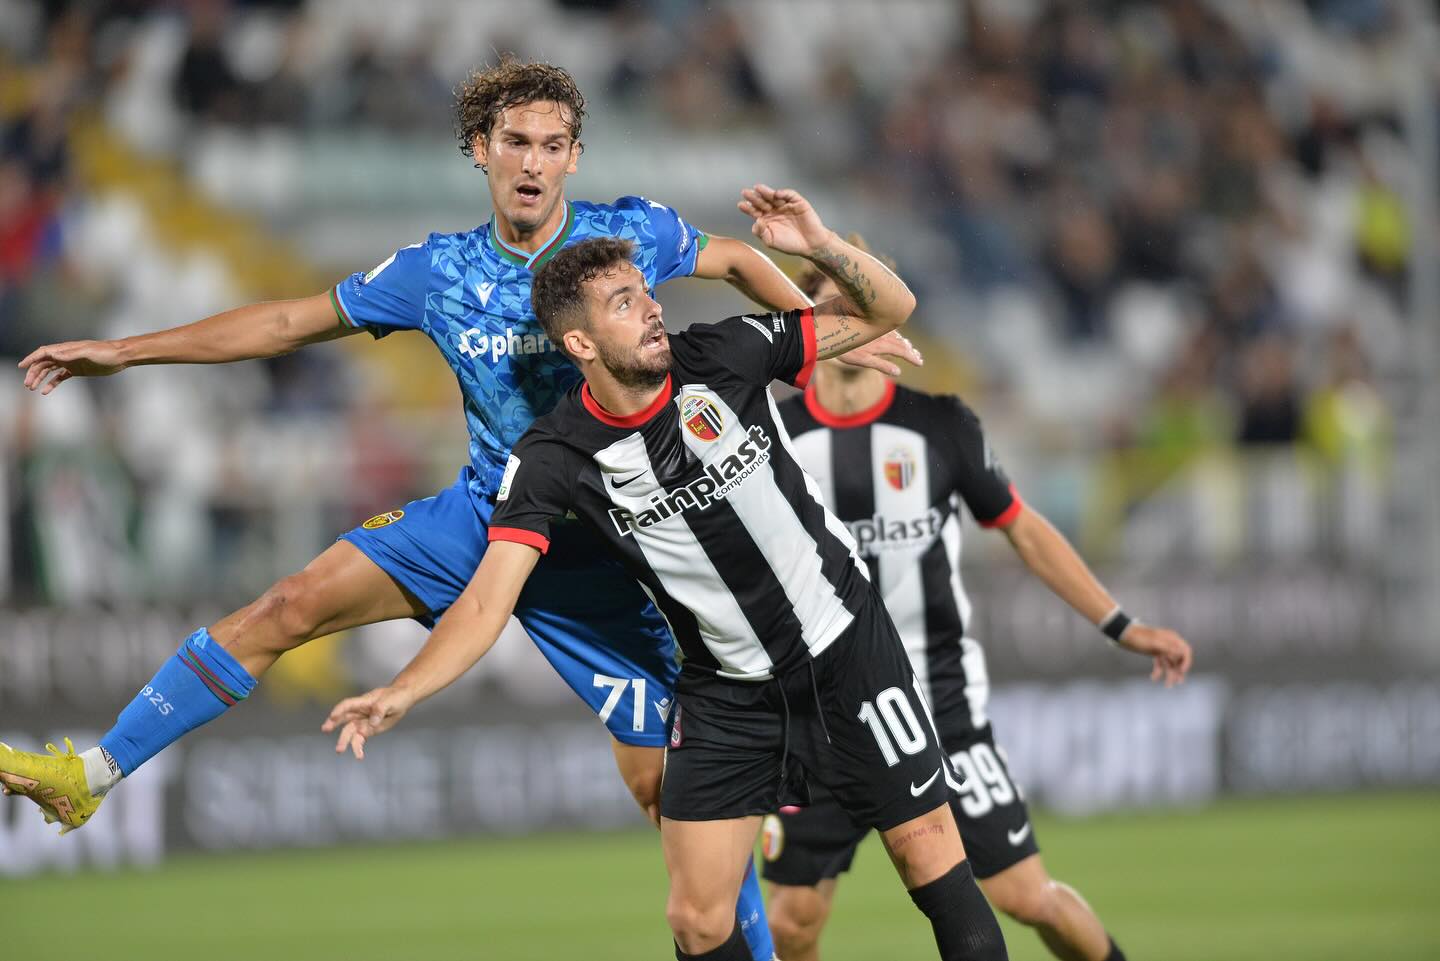 Ascoli-Ternana 2-0, Lucarelli: “Sconfitta incredibile”. Dionisi: “Colpa mia”